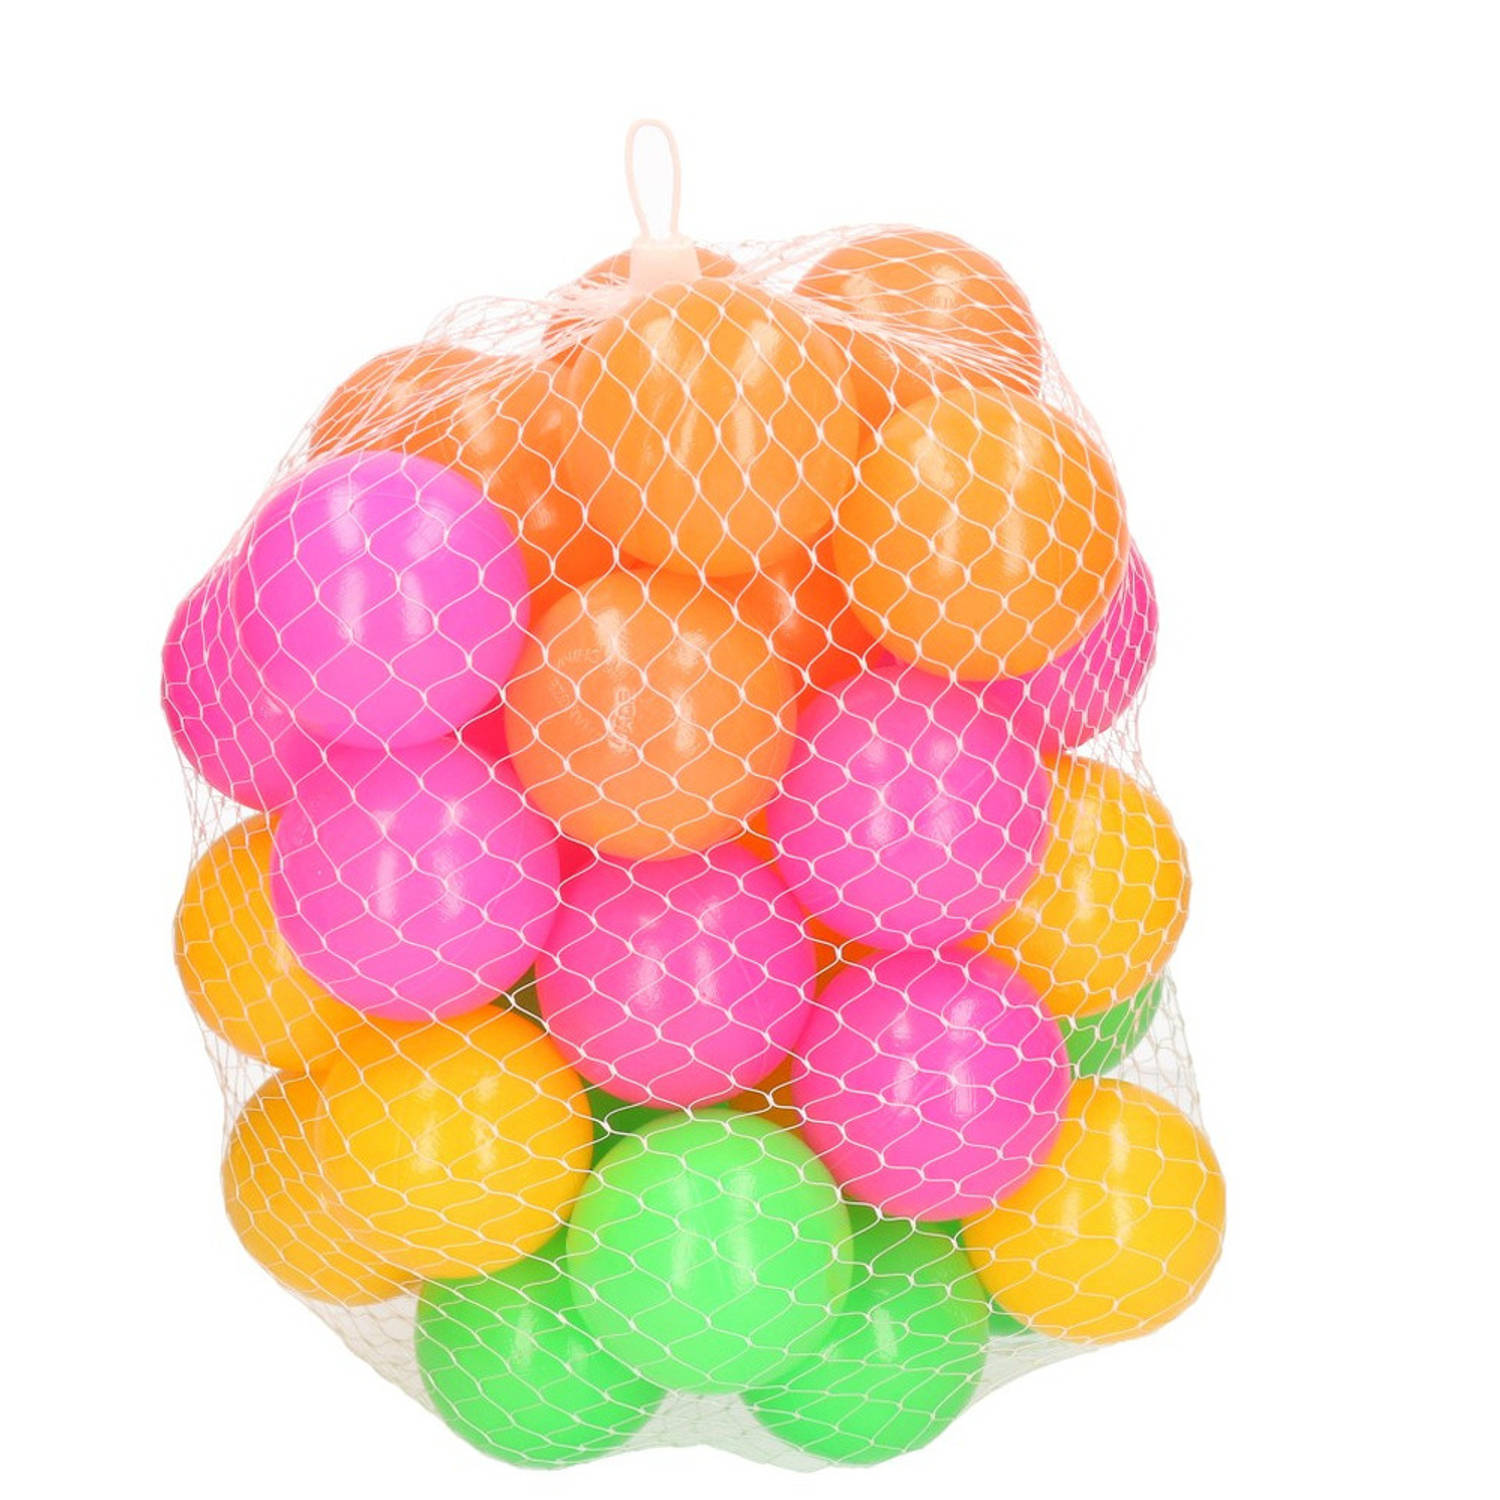 40x Ballenbak Ballen Neon Kleuren 6 Cm - Speelgoed - Ballenbakballen In Felle Kleuren